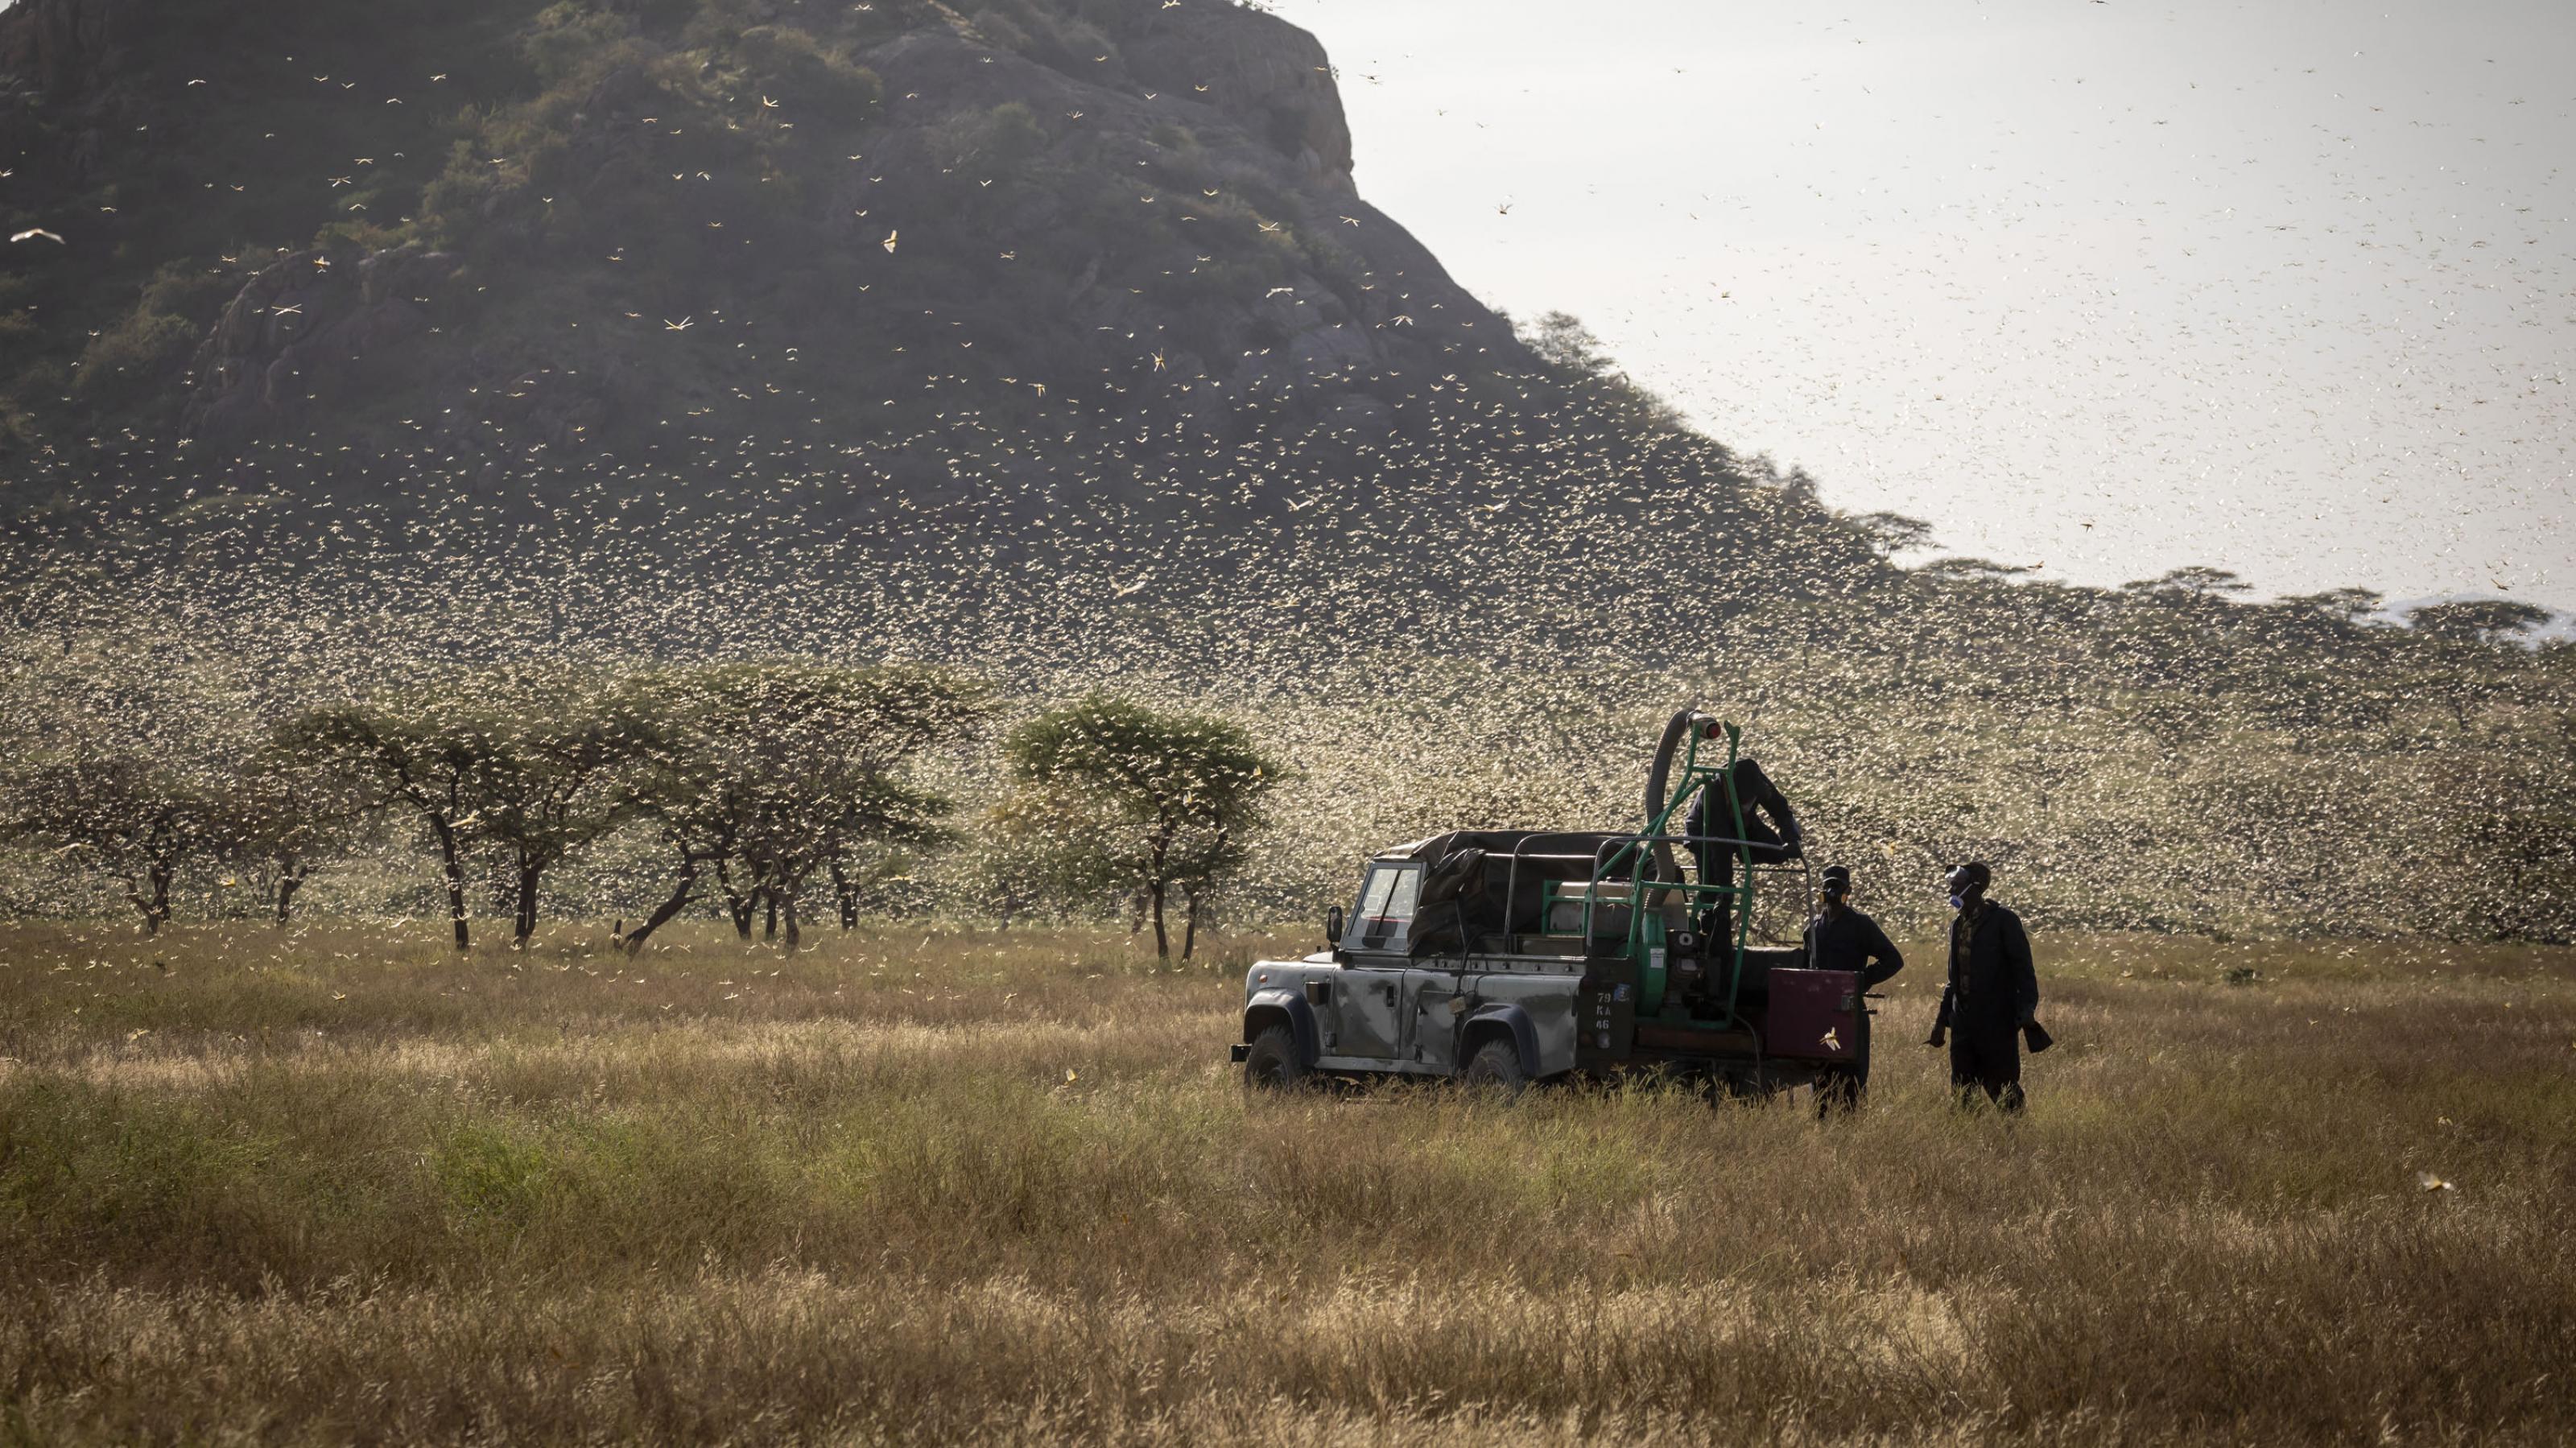 Ein Schwarm von Wüstenheuschrecken im Norden Kenias. Ein Team der FAO ist mit einem Auto unterwegs und prüft den Erfolg eines Sprüheinsatzes aus der Luft. Der Schwarm fliegt auf, die Insekten glänzen im Gegenlicht.